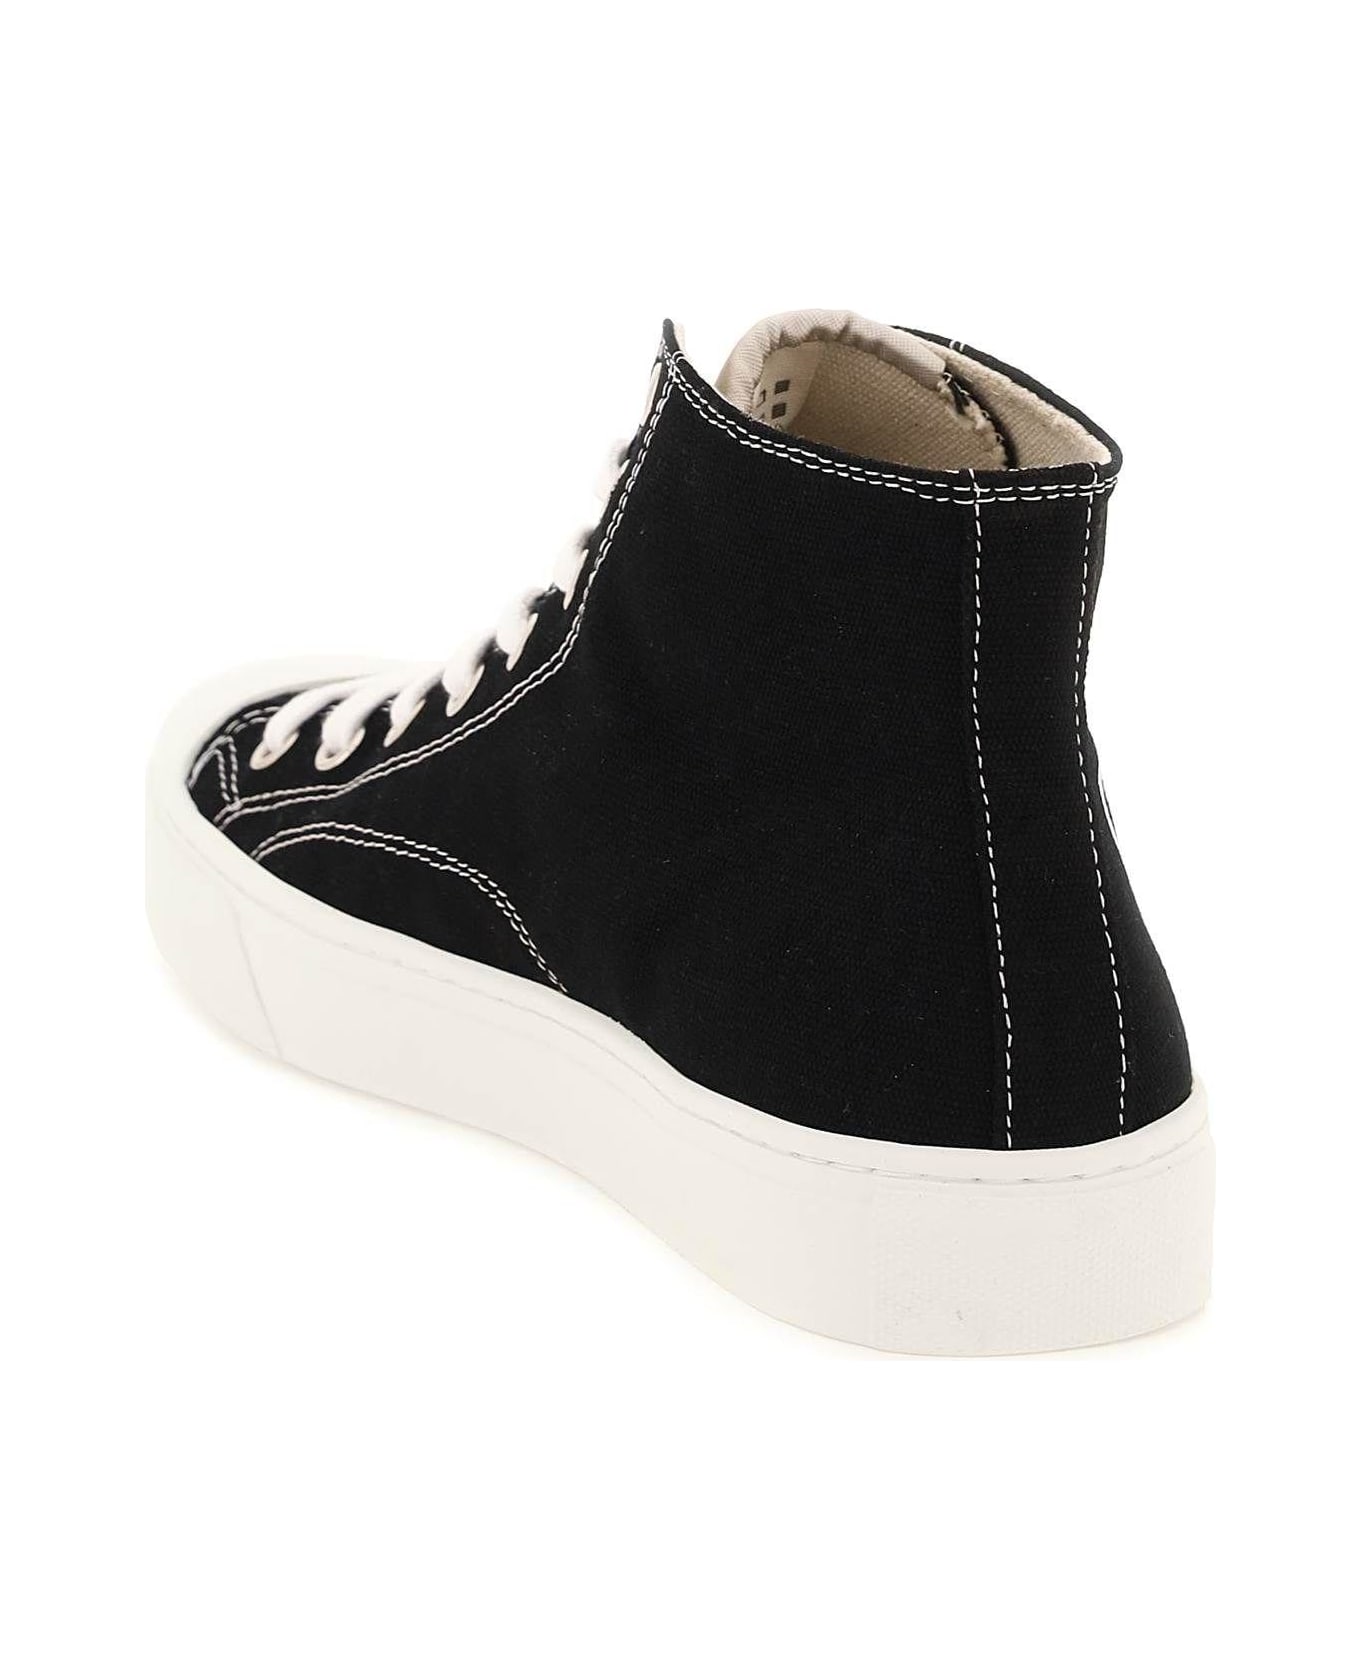 Vivienne Westwood Plimsoll High Top Canvas Sneakers - Nero